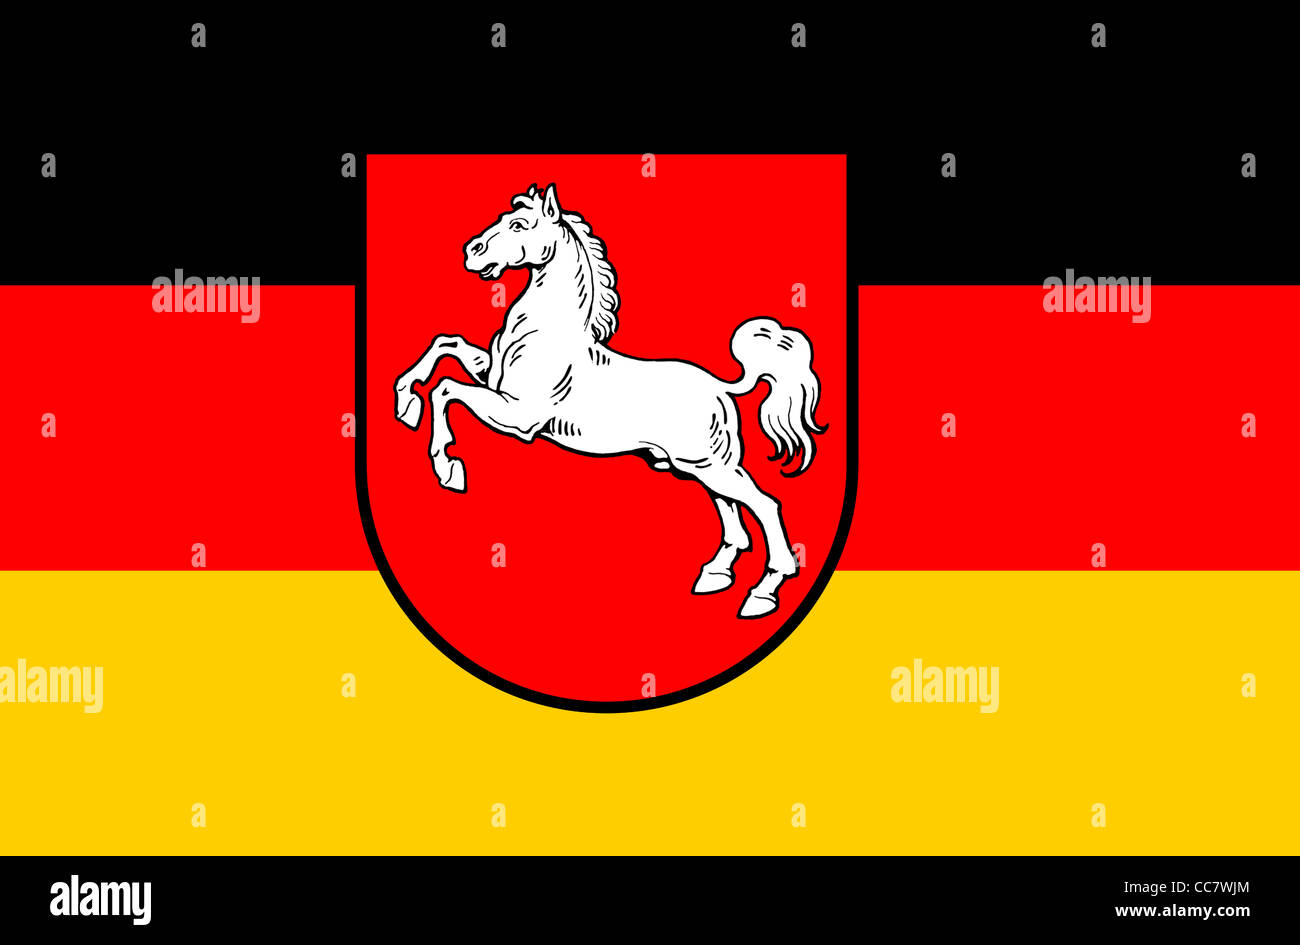 Pabellón de Baja Sajonia con el escudo de armas del estado federal alemán. Foto de stock